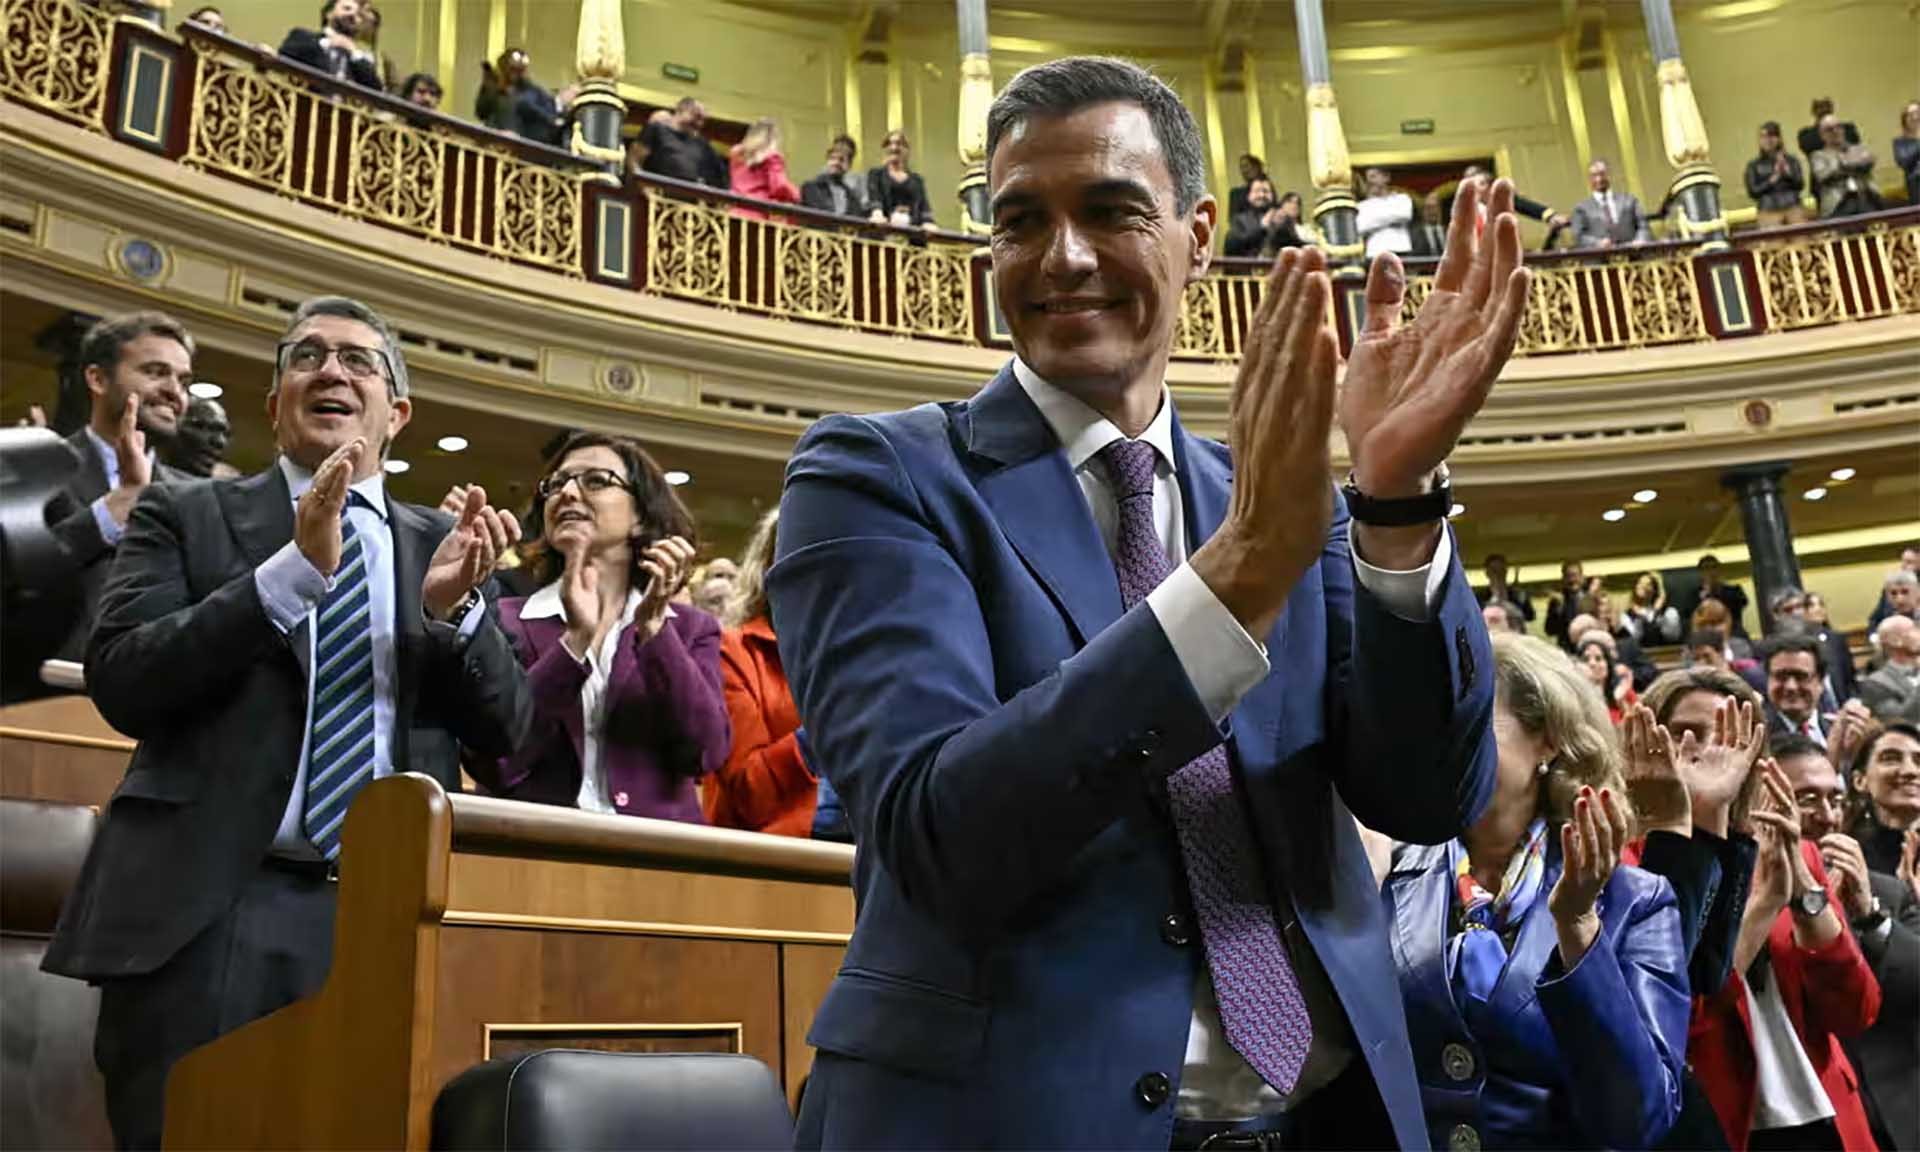 Thủ tướng Tây Ban Nha Pedro Sanchez tái đắc cử nhiệm kỳ mới sau khi nhận được 179 phiếu thuận và 171 phiếu chống, không có phiếu trắng trong cuộc bỏ phiếu ngày 16/11 tại Quốc hội.